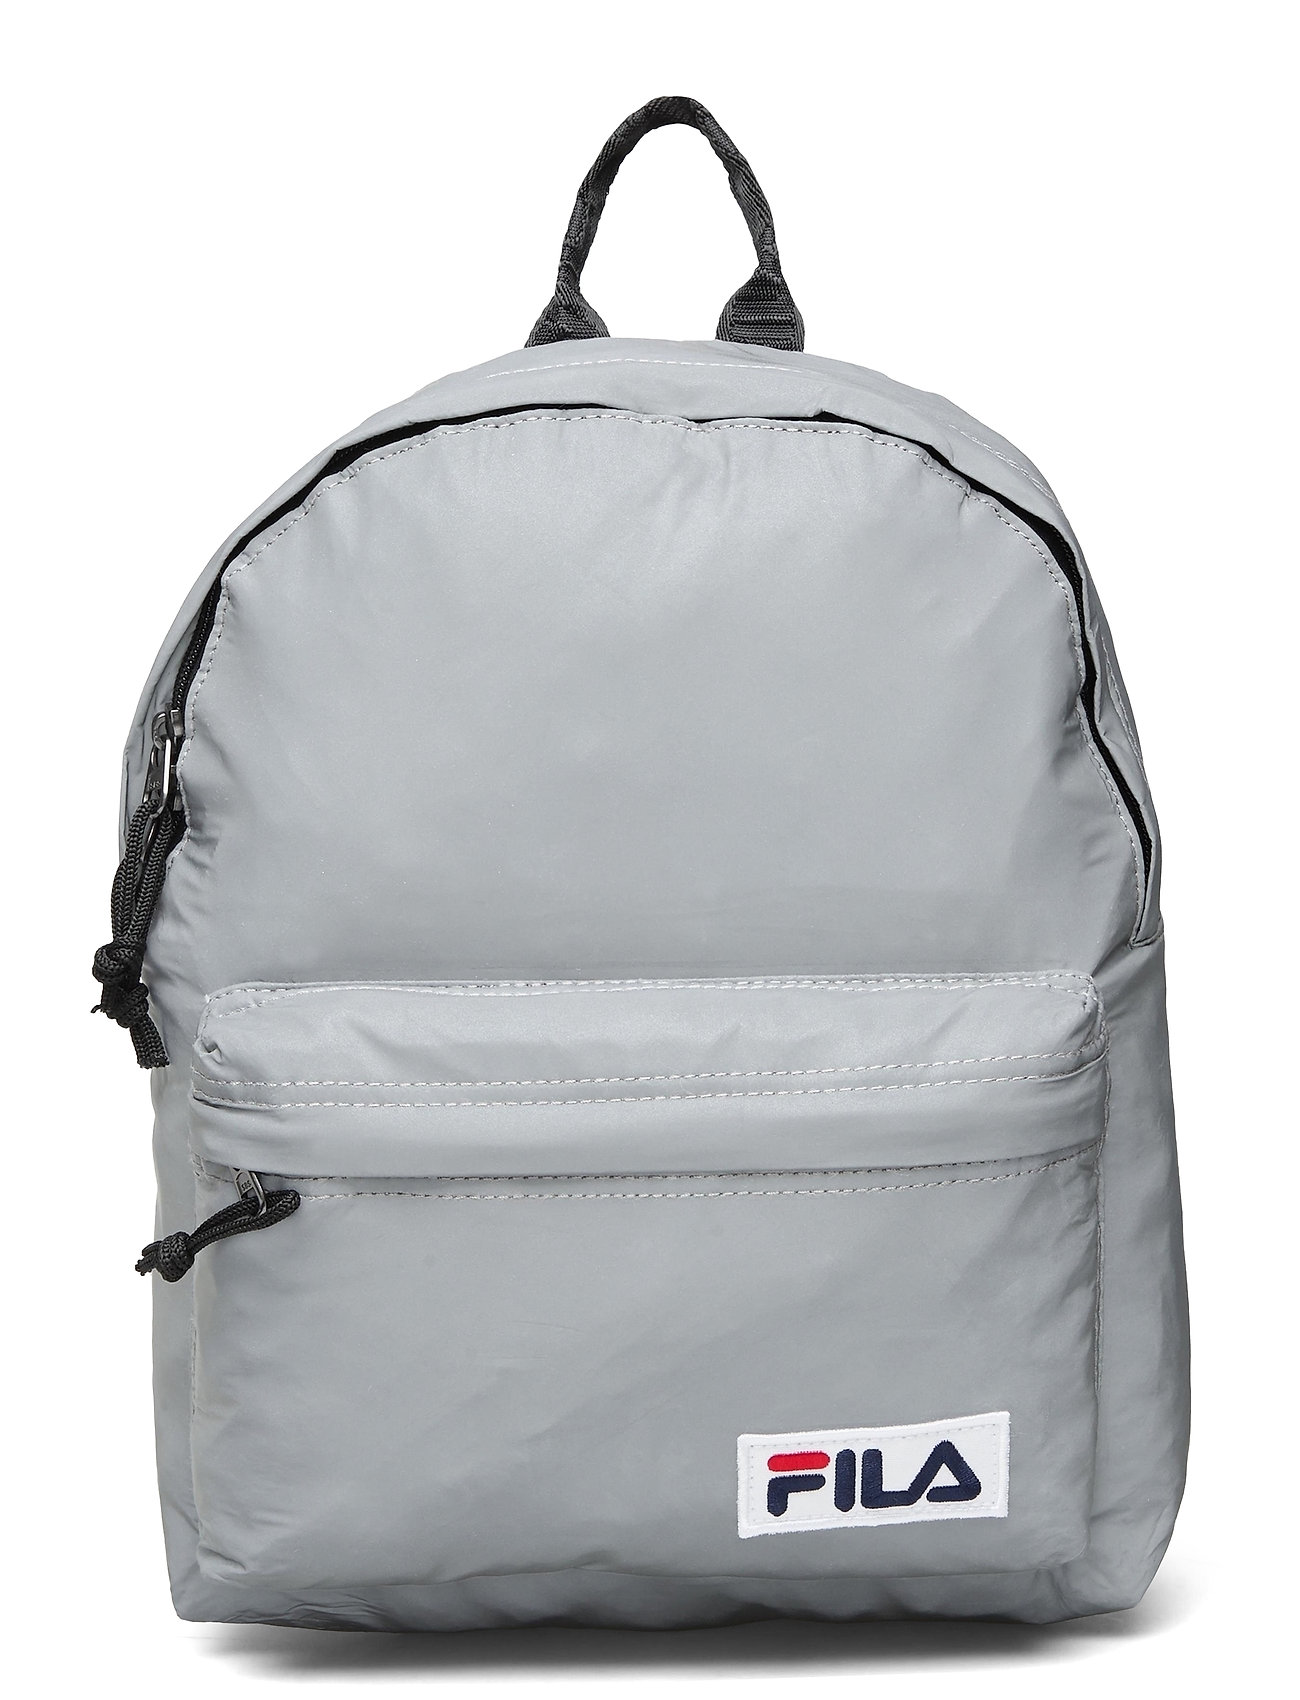 FILA rygsække – Mini Backpack MalmÖ Reflectice Rygsæk Taske Sølv FILA til herre SILVER REFLECTIVE - Pashion.dk